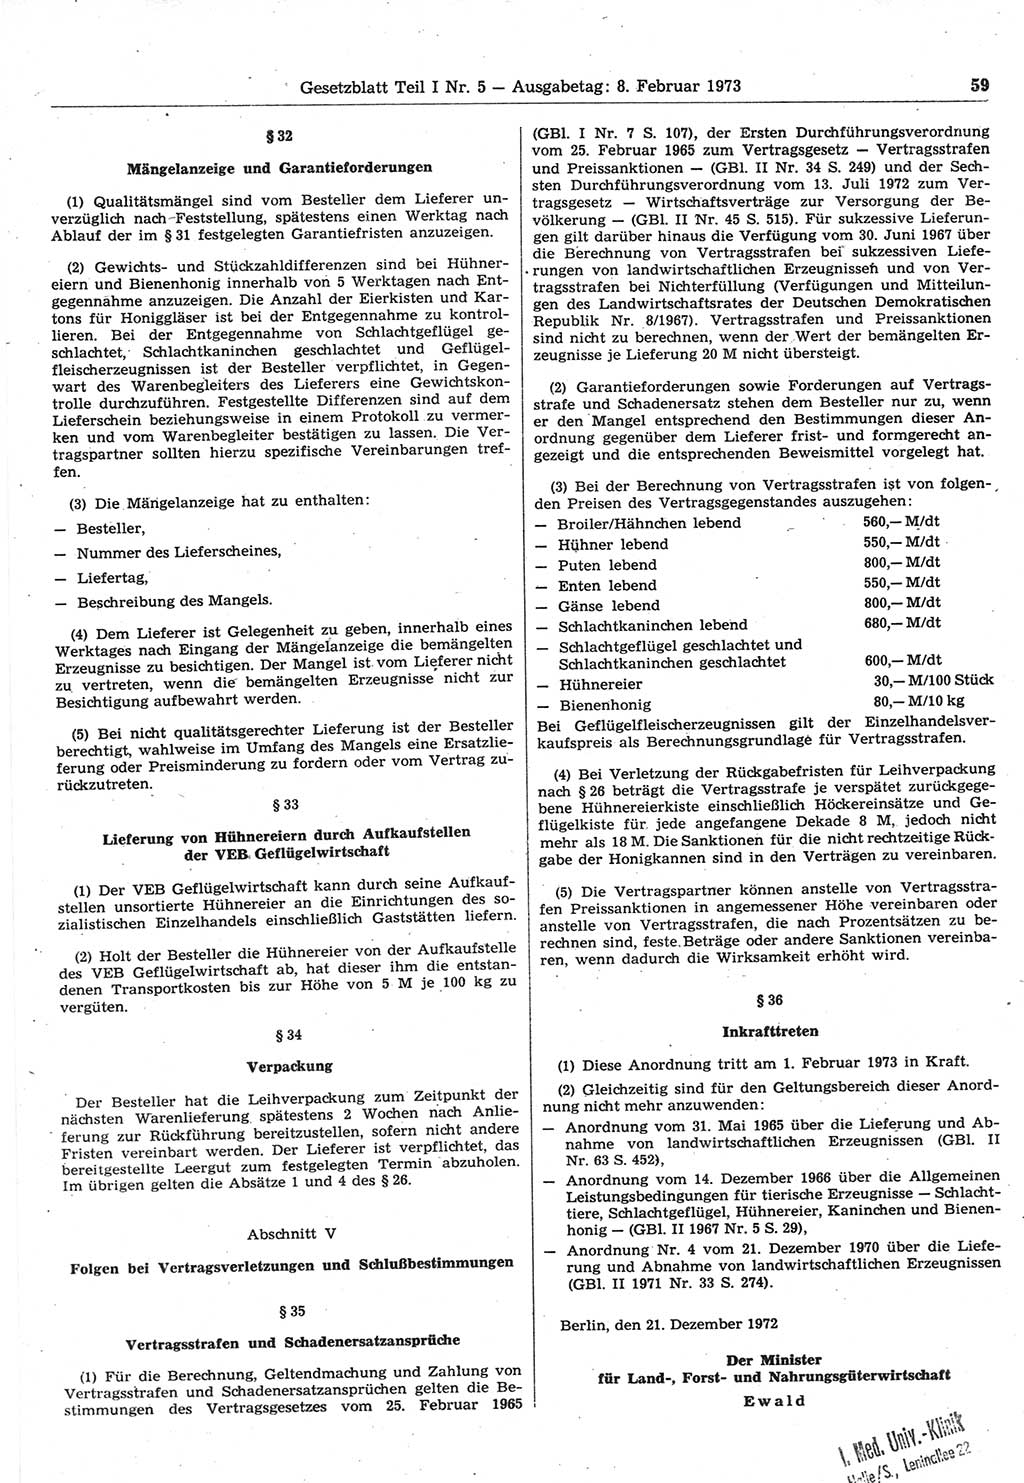 Gesetzblatt (GBl.) der Deutschen Demokratischen Republik (DDR) Teil Ⅰ 1973, Seite 59 (GBl. DDR Ⅰ 1973, S. 59)